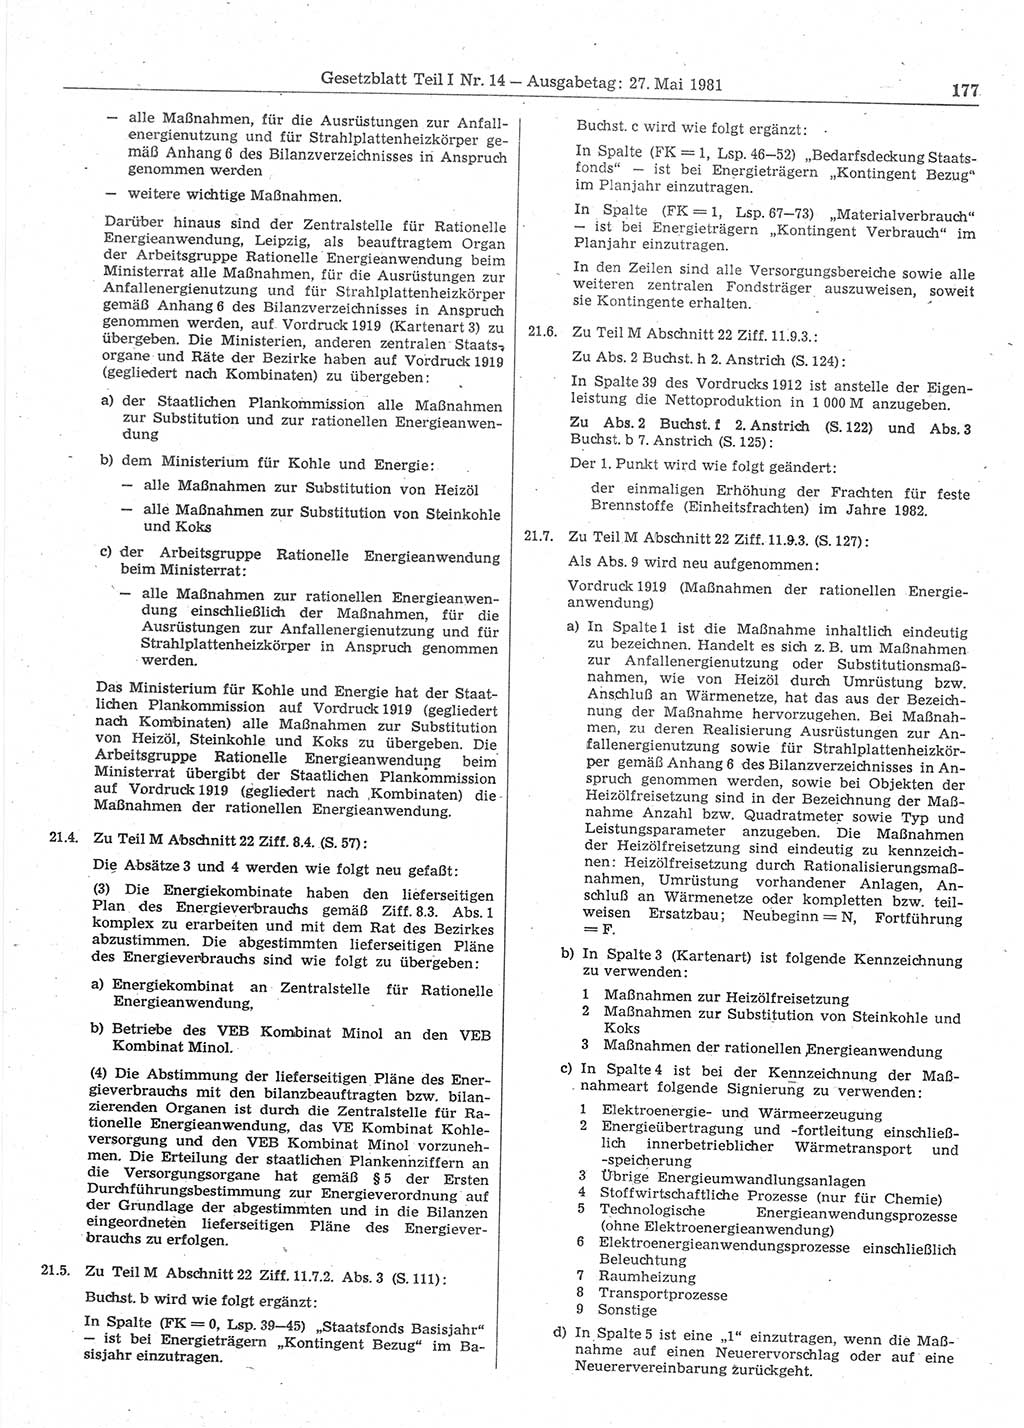 Gesetzblatt (GBl.) der Deutschen Demokratischen Republik (DDR) Teil Ⅰ 1981, Seite 177 (GBl. DDR Ⅰ 1981, S. 177)